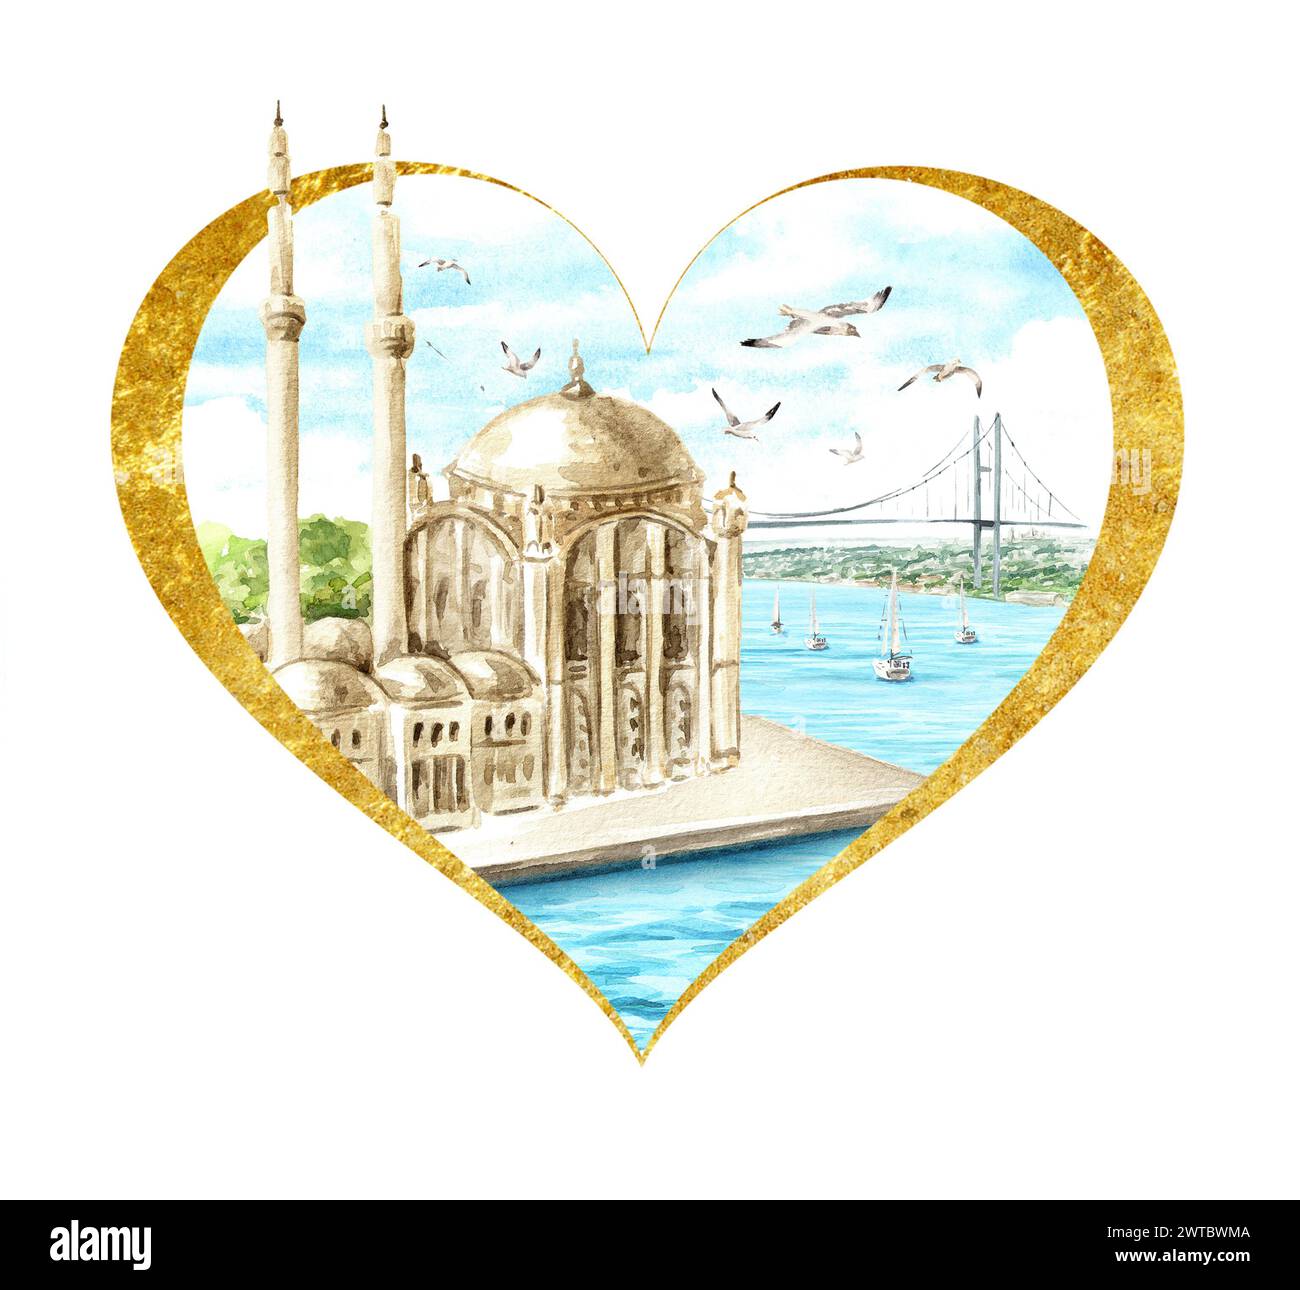 La Moschea di Ortakoy e il ponte sul Bosforo, Istanbul, Turchia. Illustrazione ad acquerello disegnata a mano, isolata su sfondo bianco Foto Stock